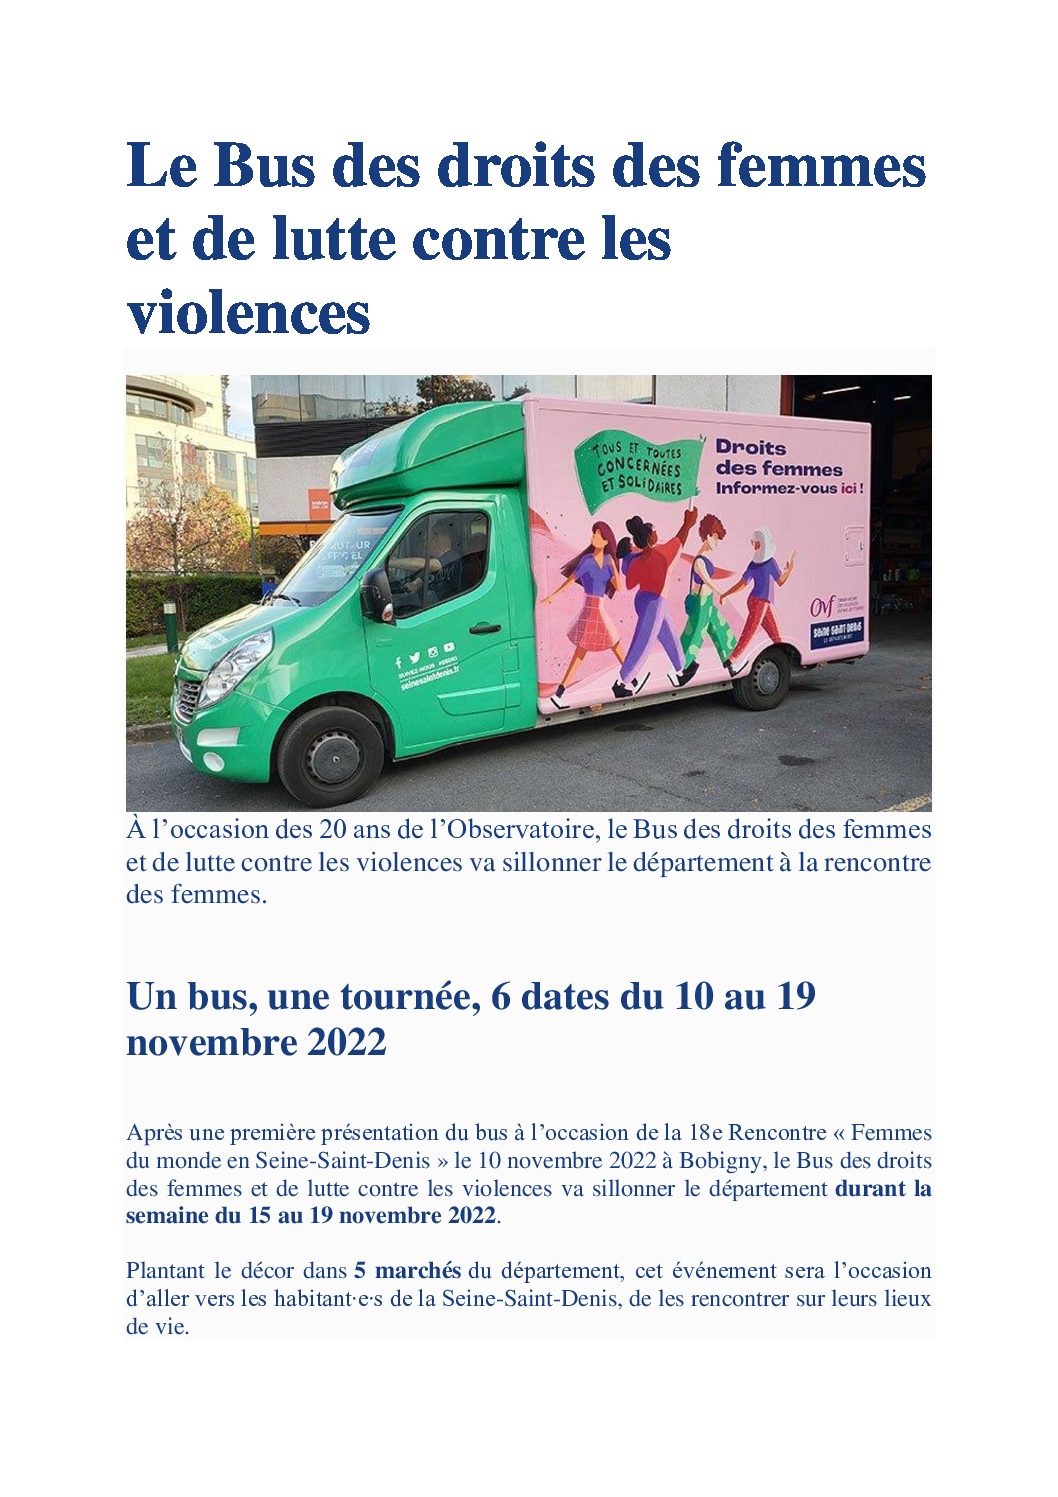 Du 10 au 19 novembre : Le bus des droits des femmes et de lutte contre les violences en Seine-Saint-Denis